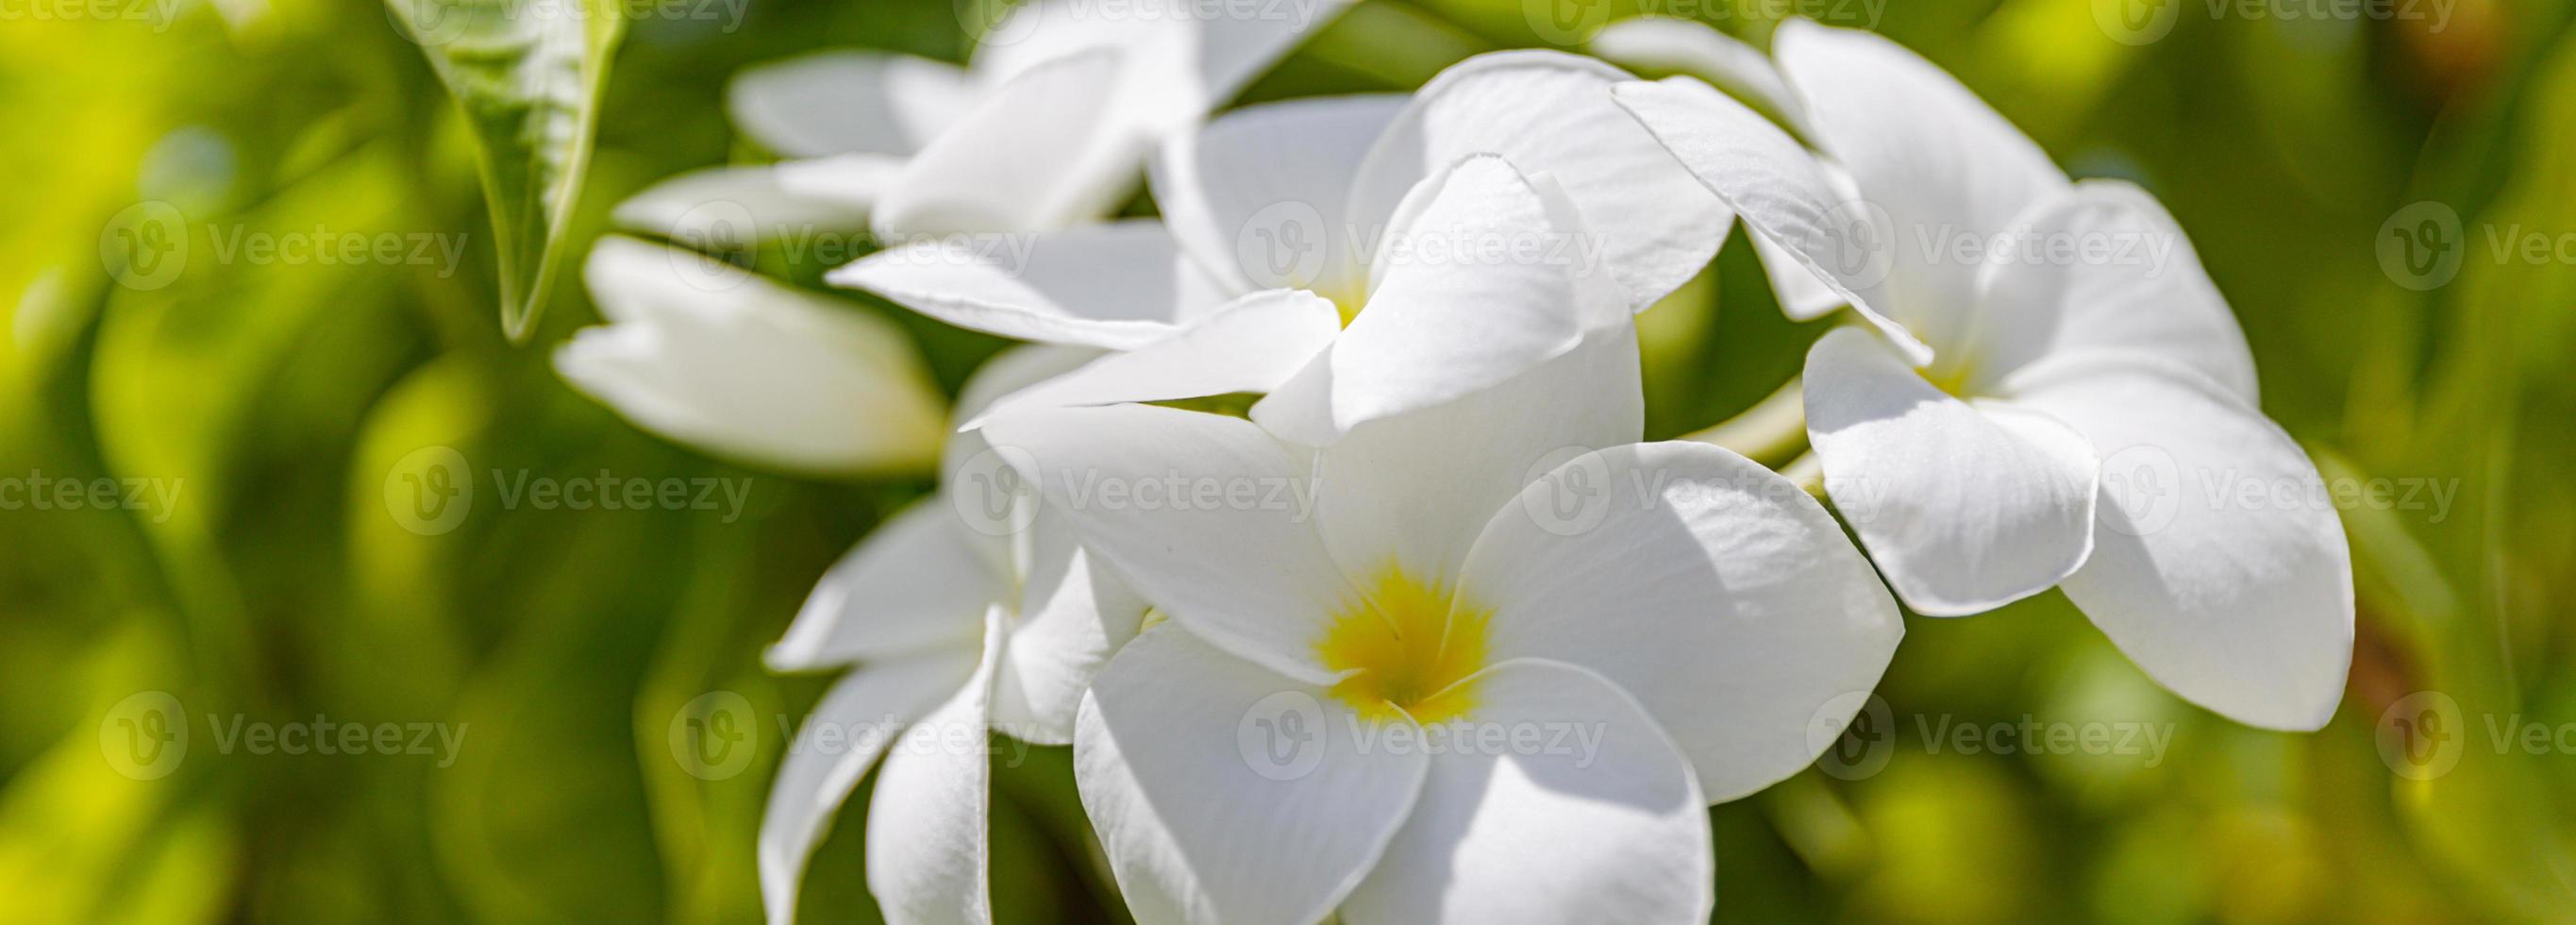 bouquet de fleurs de plumeria blanches et jaunes en gros plan, feuilles vertes arrière-plan flou bokeh, branche de frangipanier en fleurs, fleur tropicale exotique en fleurs, bel arrangement floral naturel photo